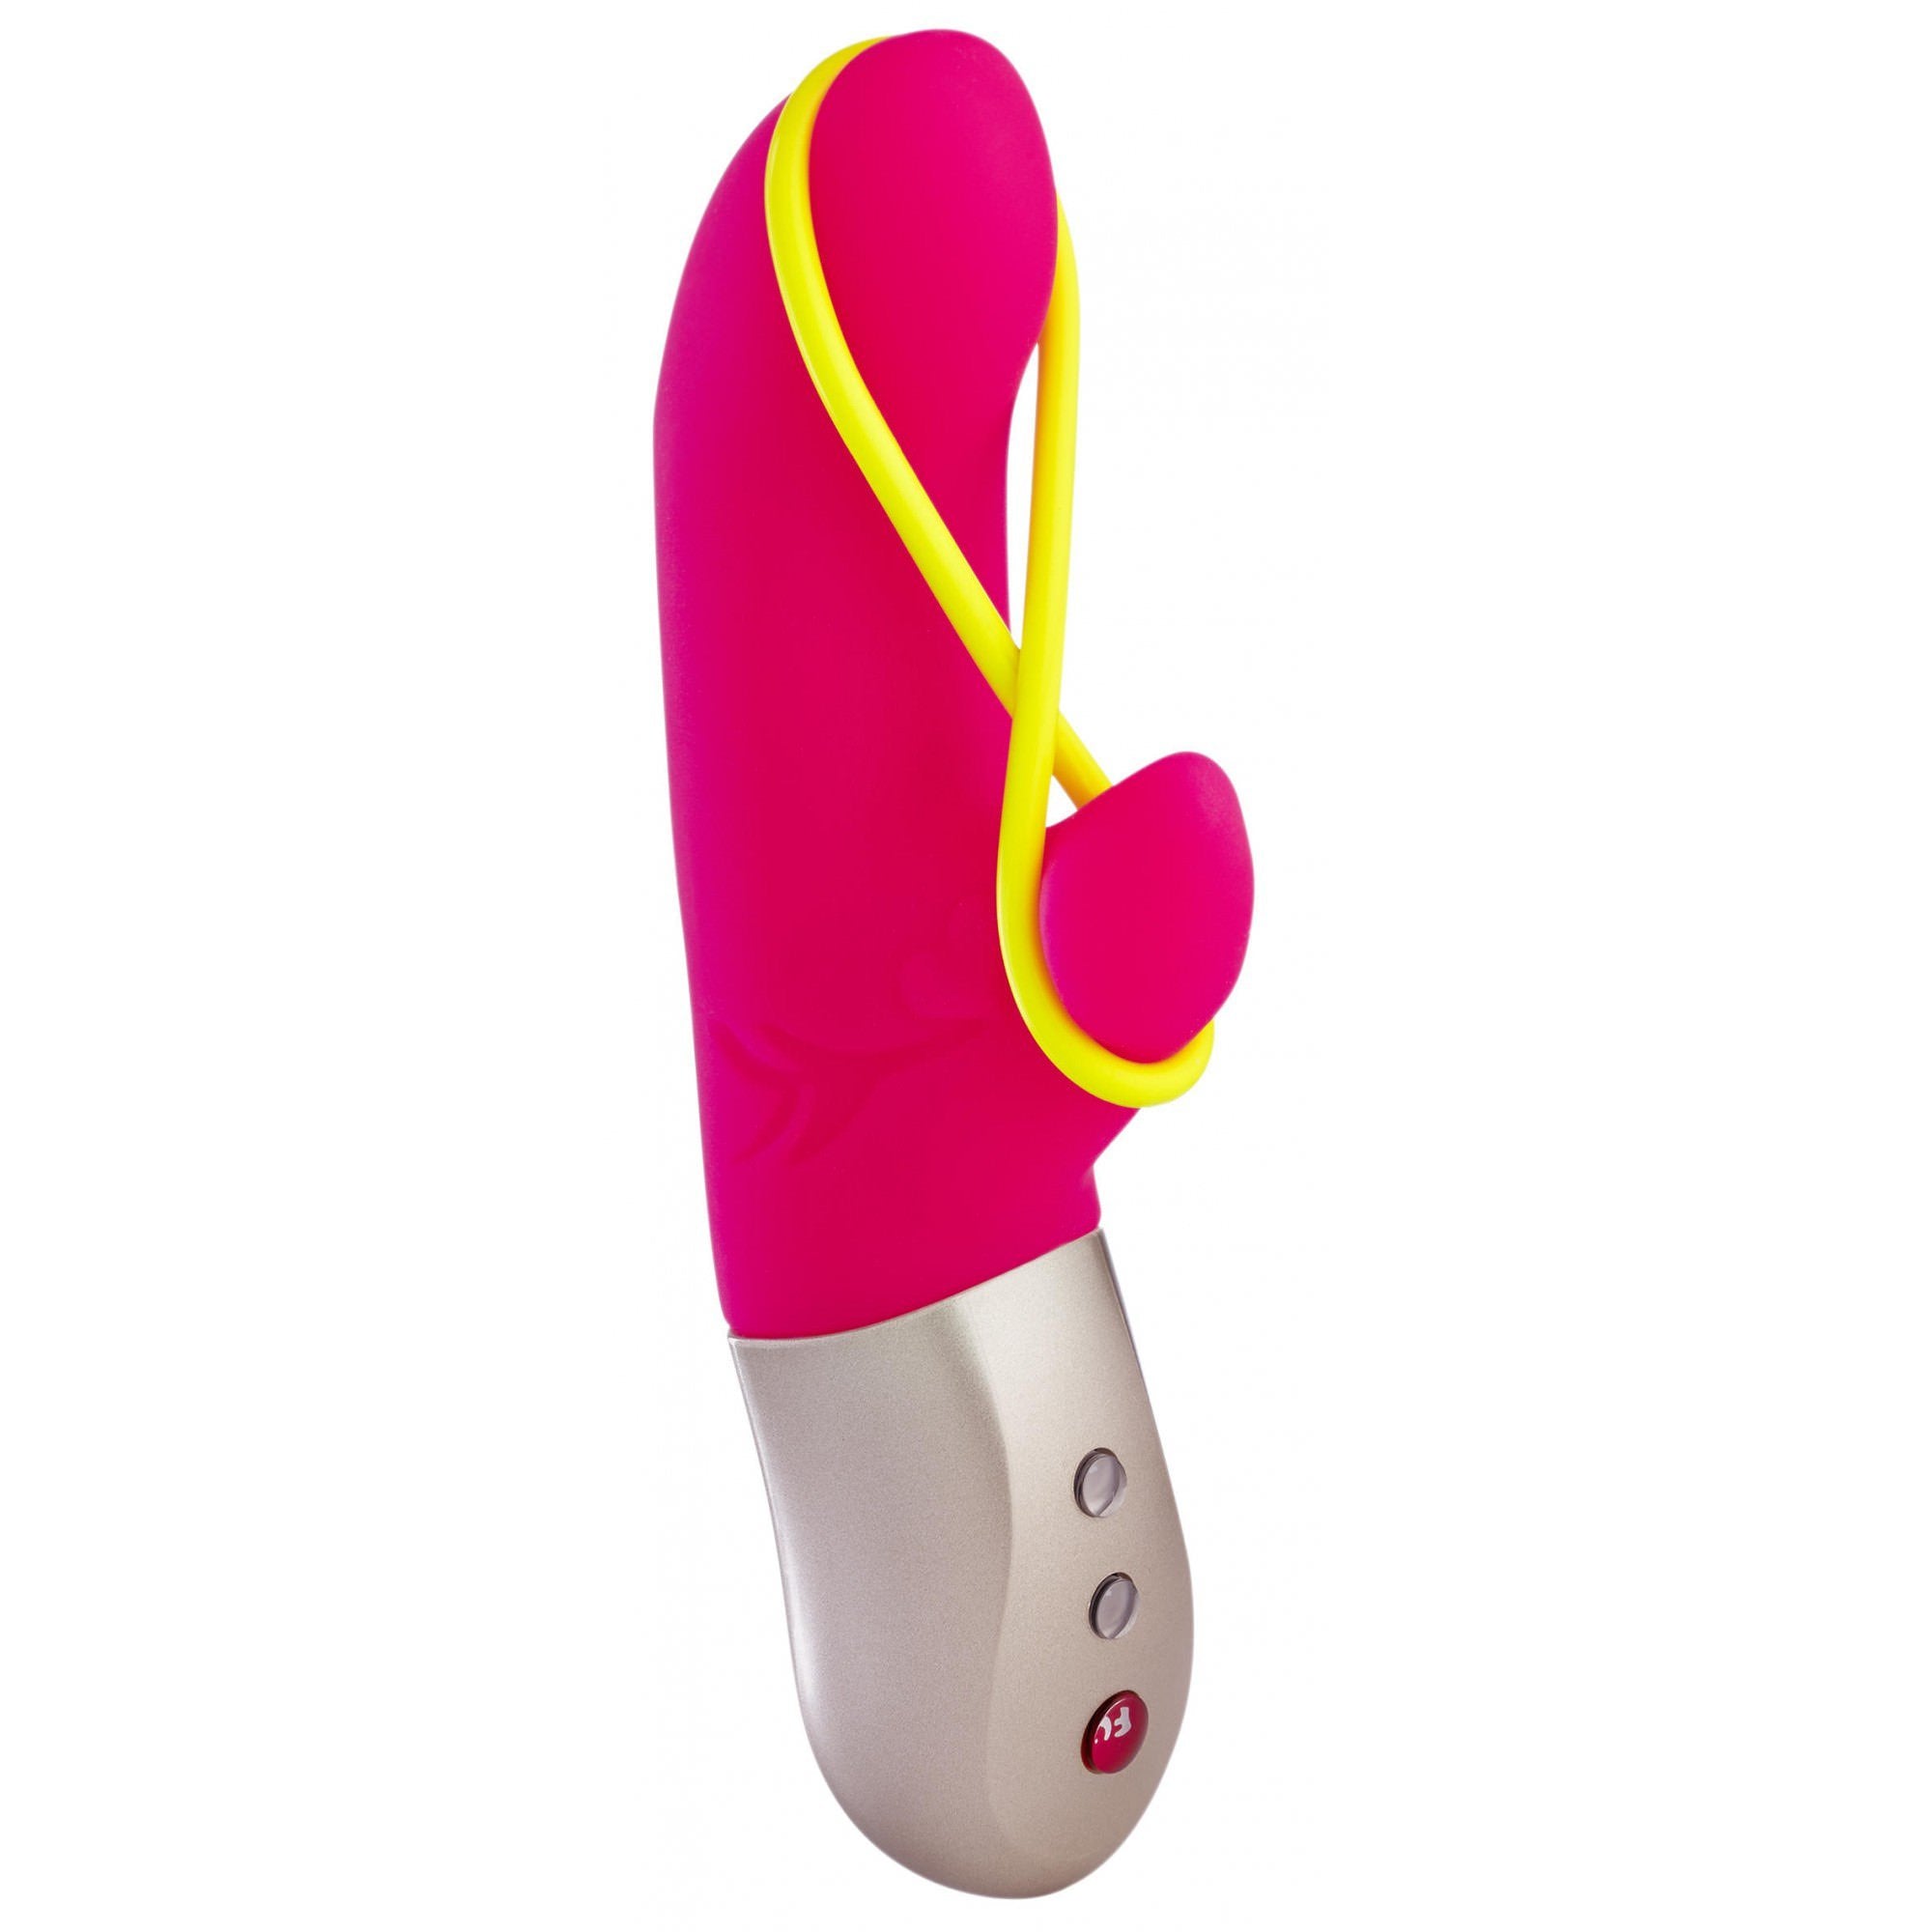 O Vibrador Duplo Amorino Rabbit é um brinquedo de silicone da marca Fun Factory que auxilia na tripla estimulação feminina, sendo um estimulador penetrável para o Ponto G, um estimulador de clitóris e, com um elástico preso às duas extremidades durante a penetração, estimular toda a genitália, grandes e pequenos lábios.